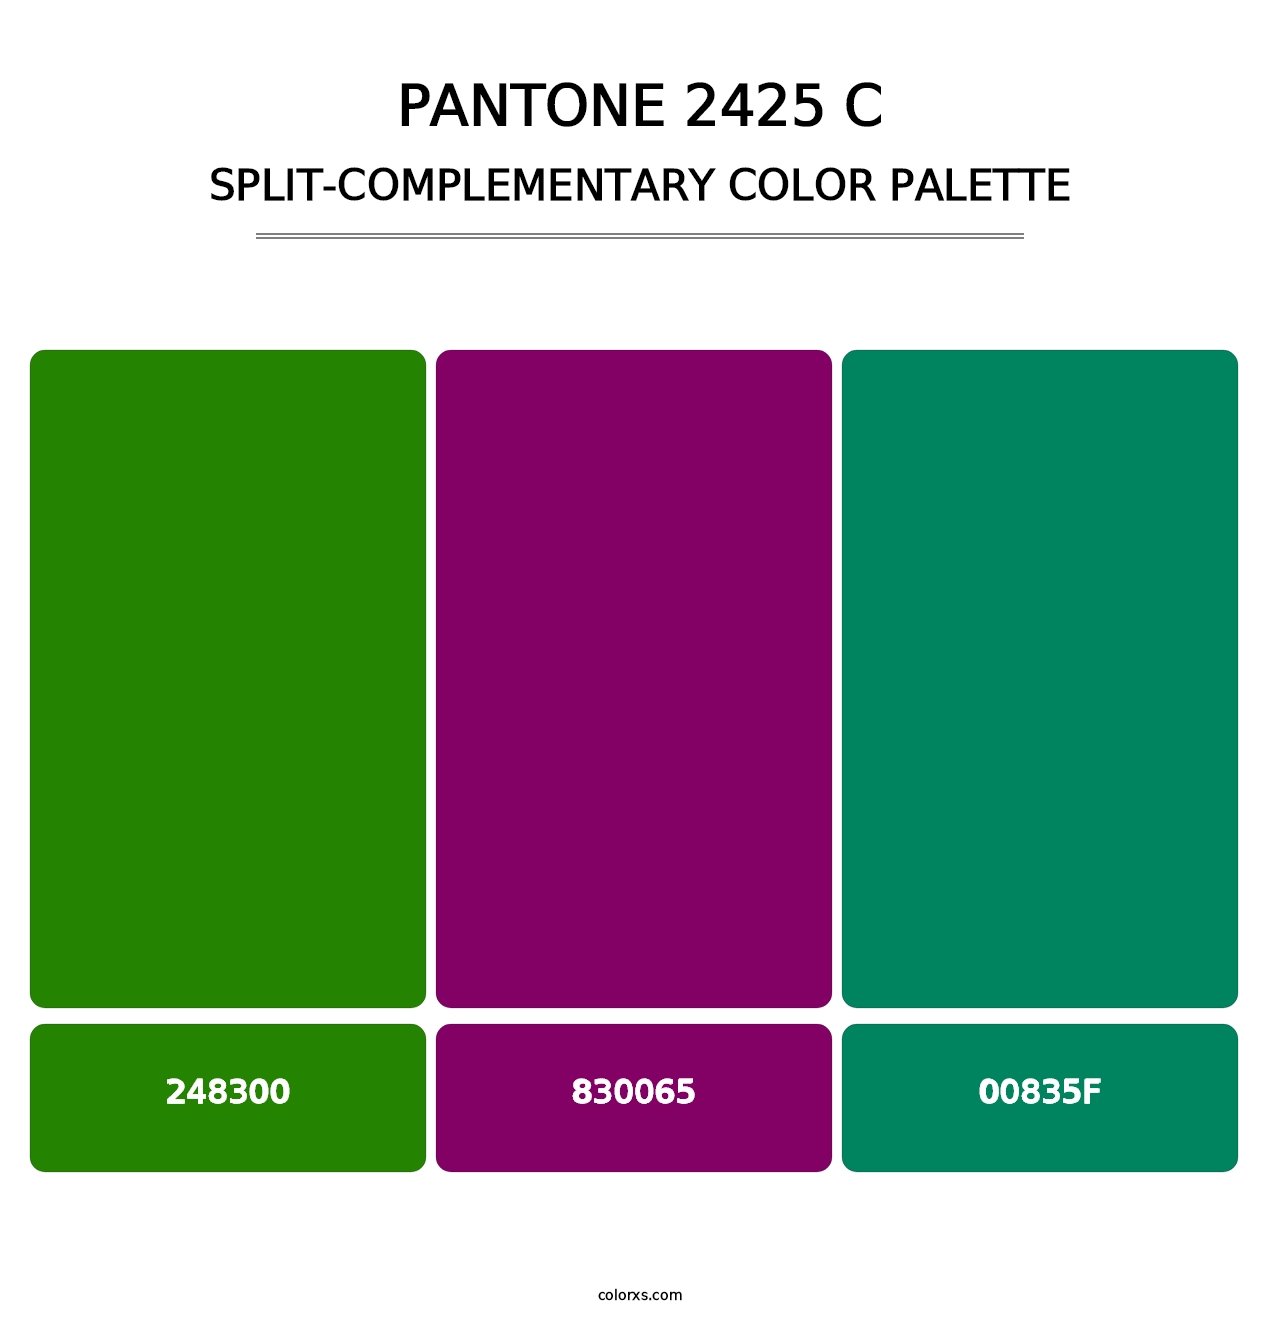 PANTONE 2425 C - Split-Complementary Color Palette